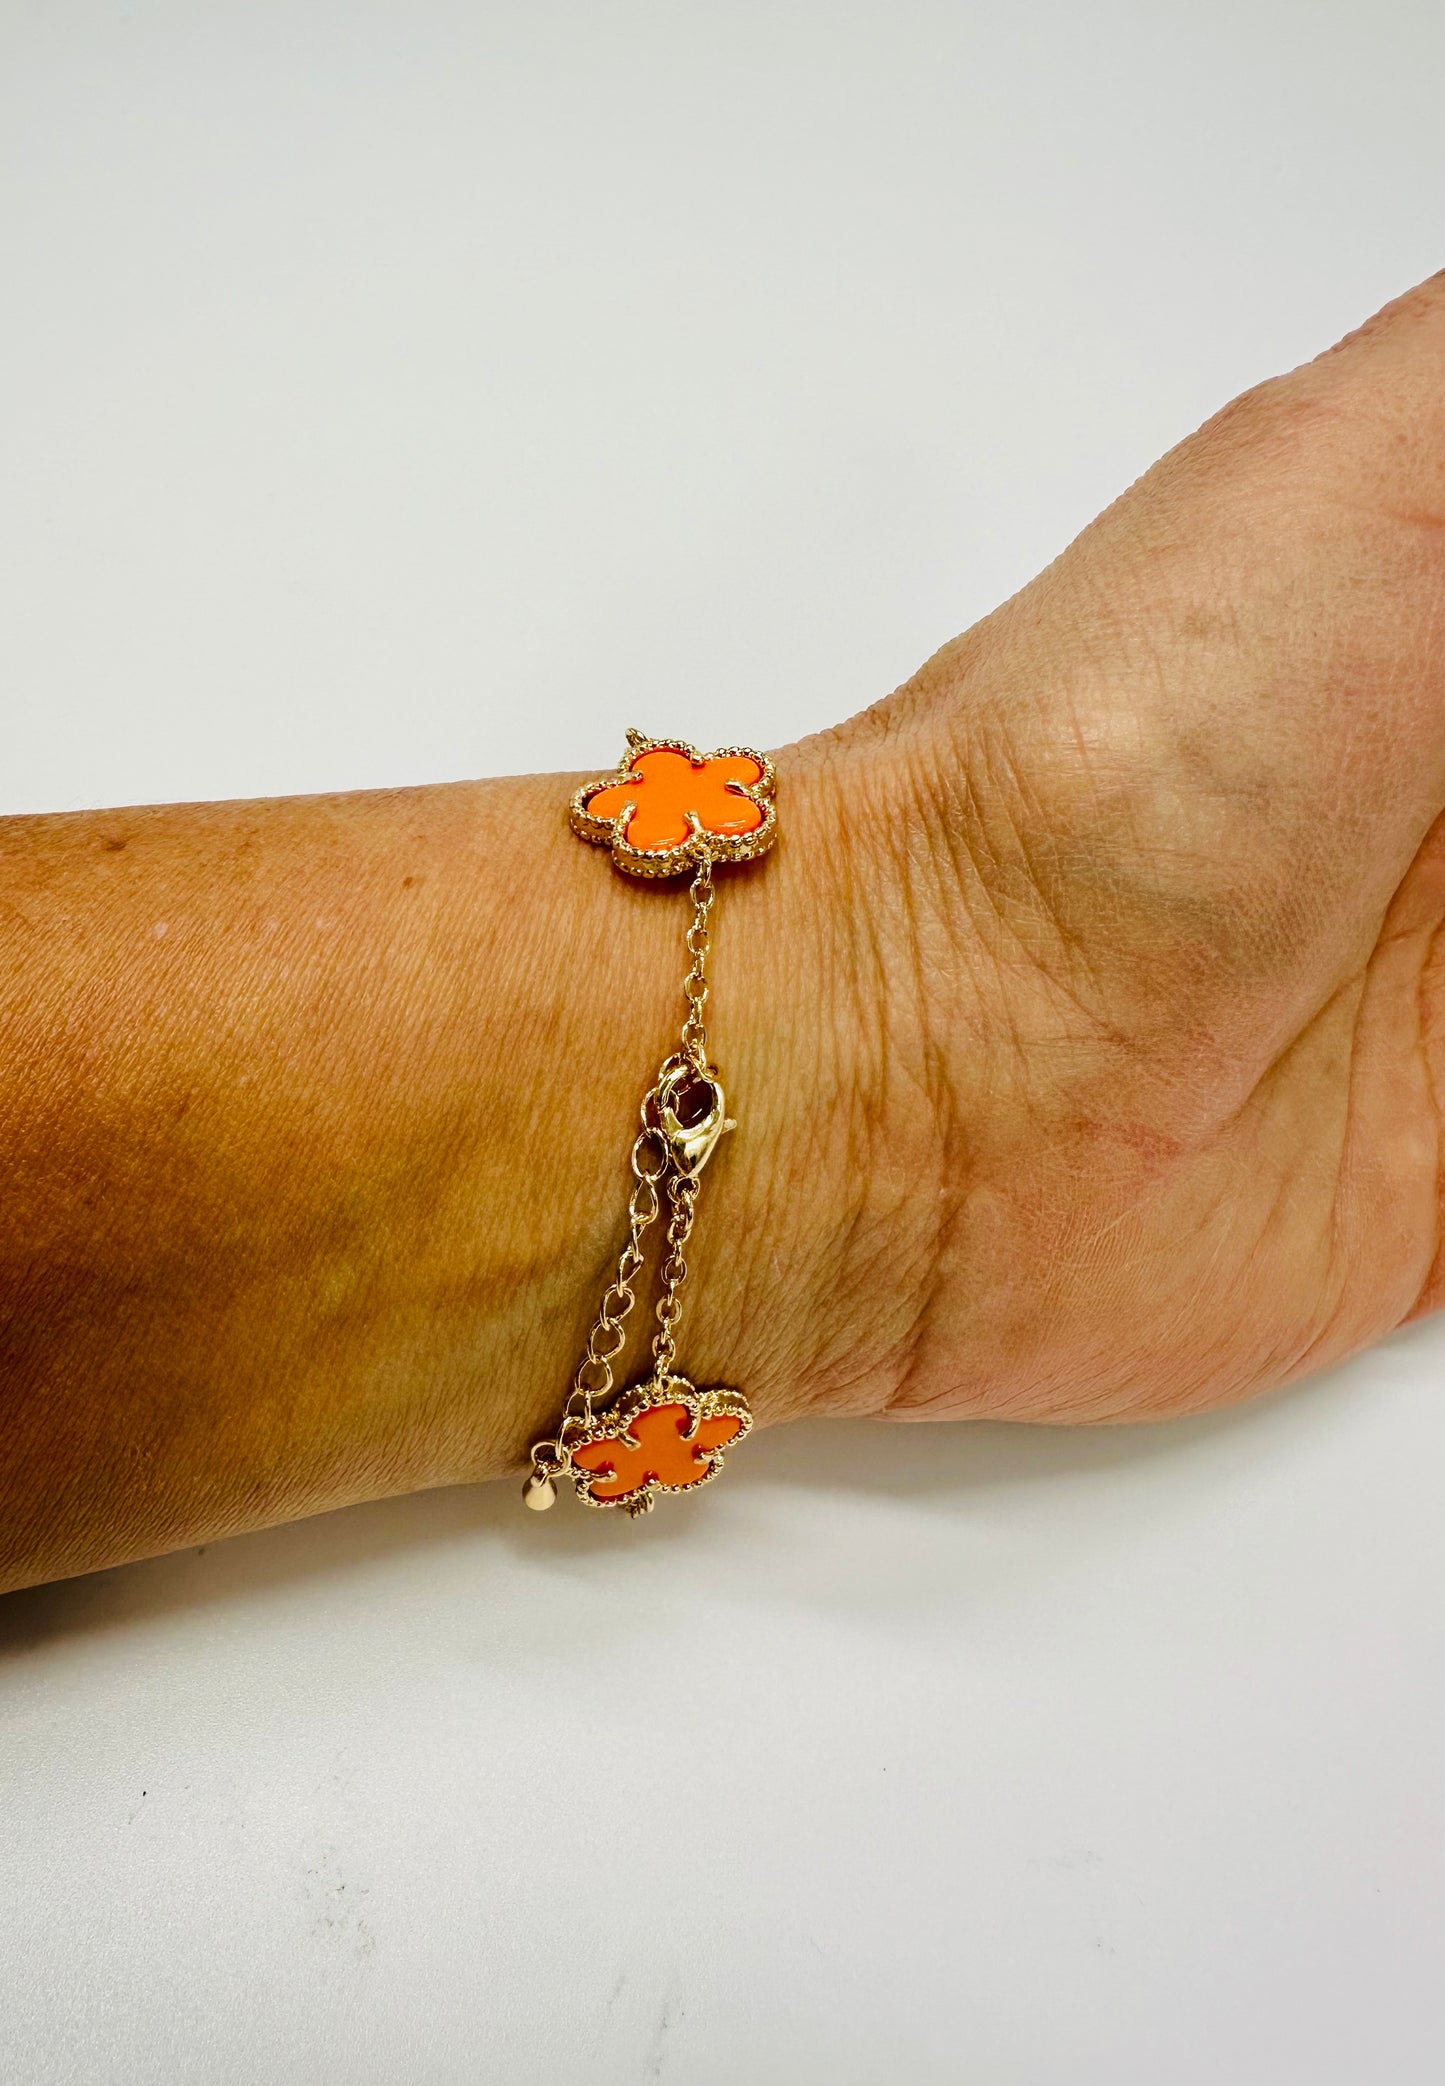 Inspiring Flowers That Last Forever Bracelet (Orange)